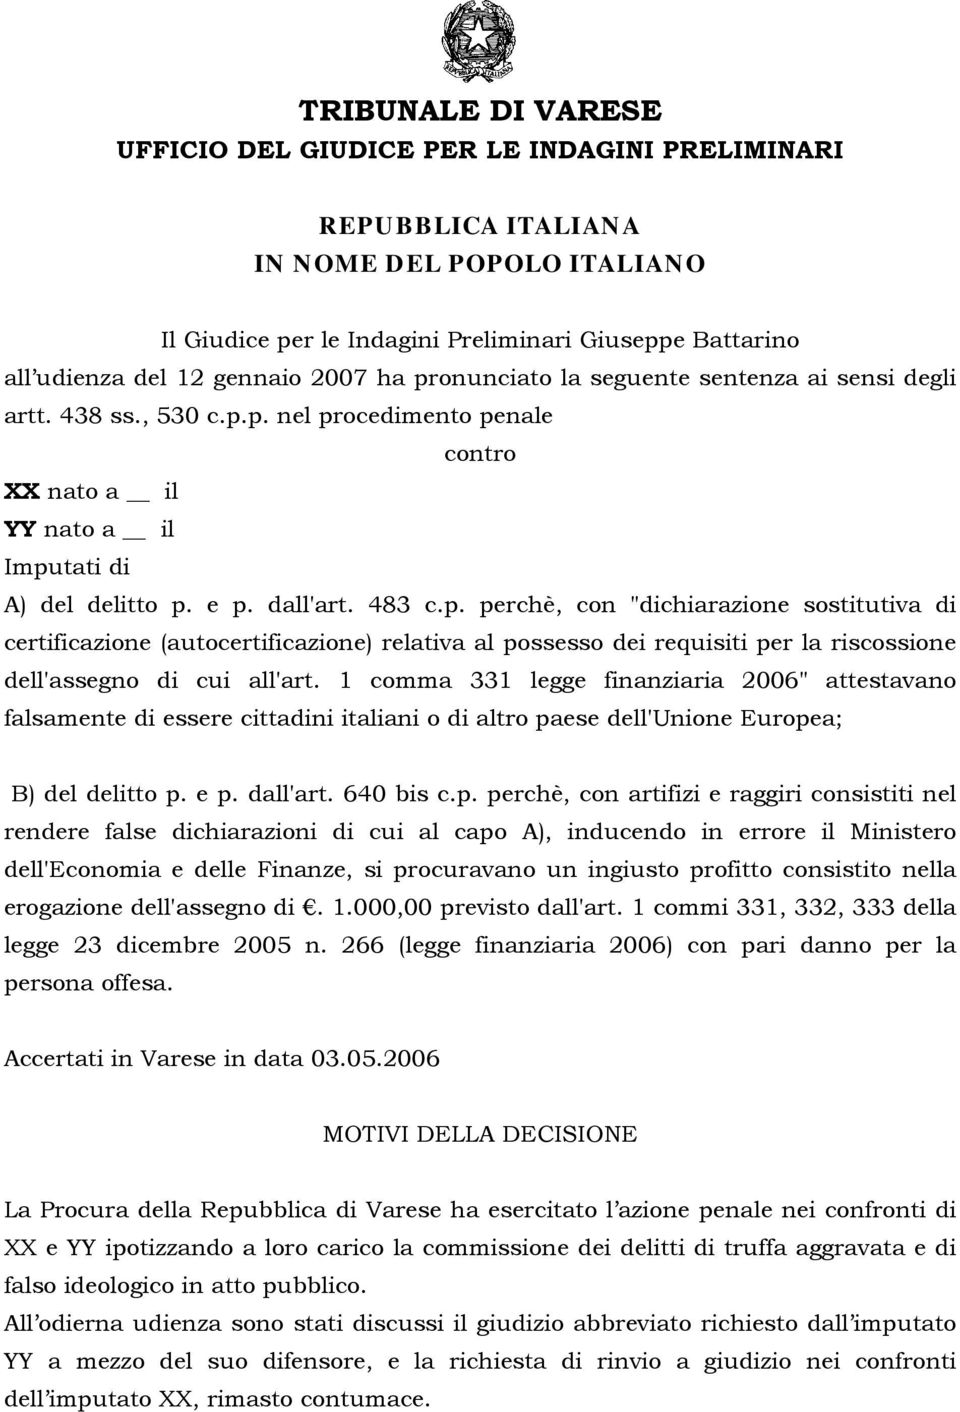 1 comma 331 legge finanziaria 2006" attestavano falsamente di essere cittadini italiani o di altro pa